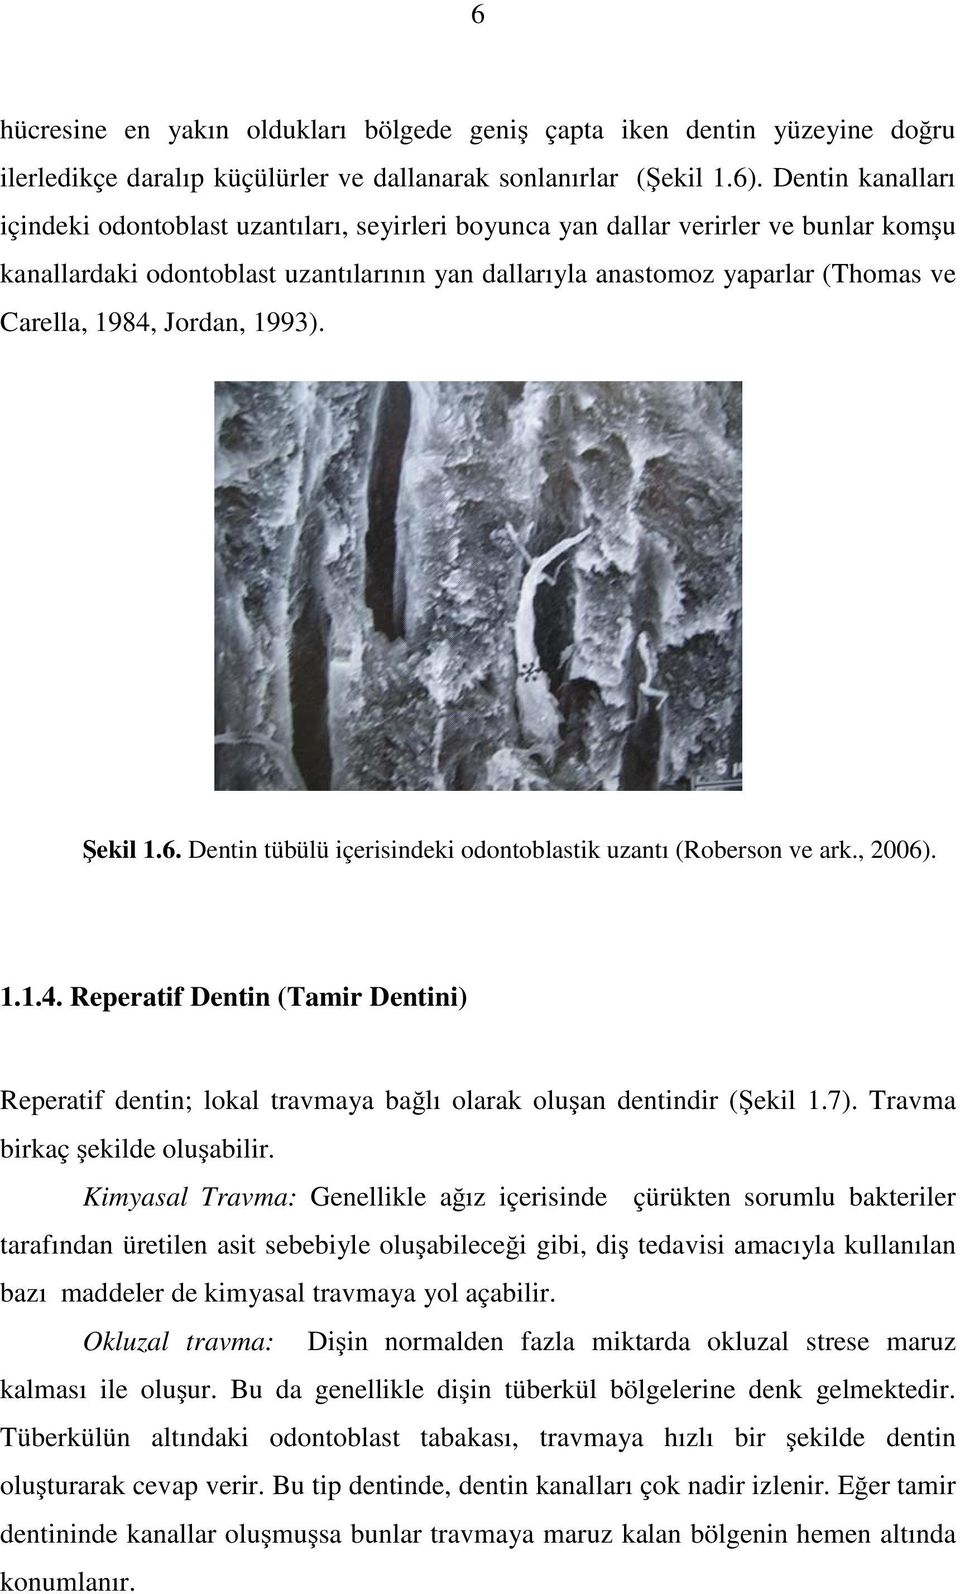 1984, Jordan, 1993). Şekil 1.6. Dentin tübülü içerisindeki odontoblastik uzantı (Roberson ve ark., 2006). 1.1.4. Reperatif Dentin (Tamir Dentini) Reperatif dentin; lokal travmaya bağlı olarak oluşan dentindir (Şekil 1.